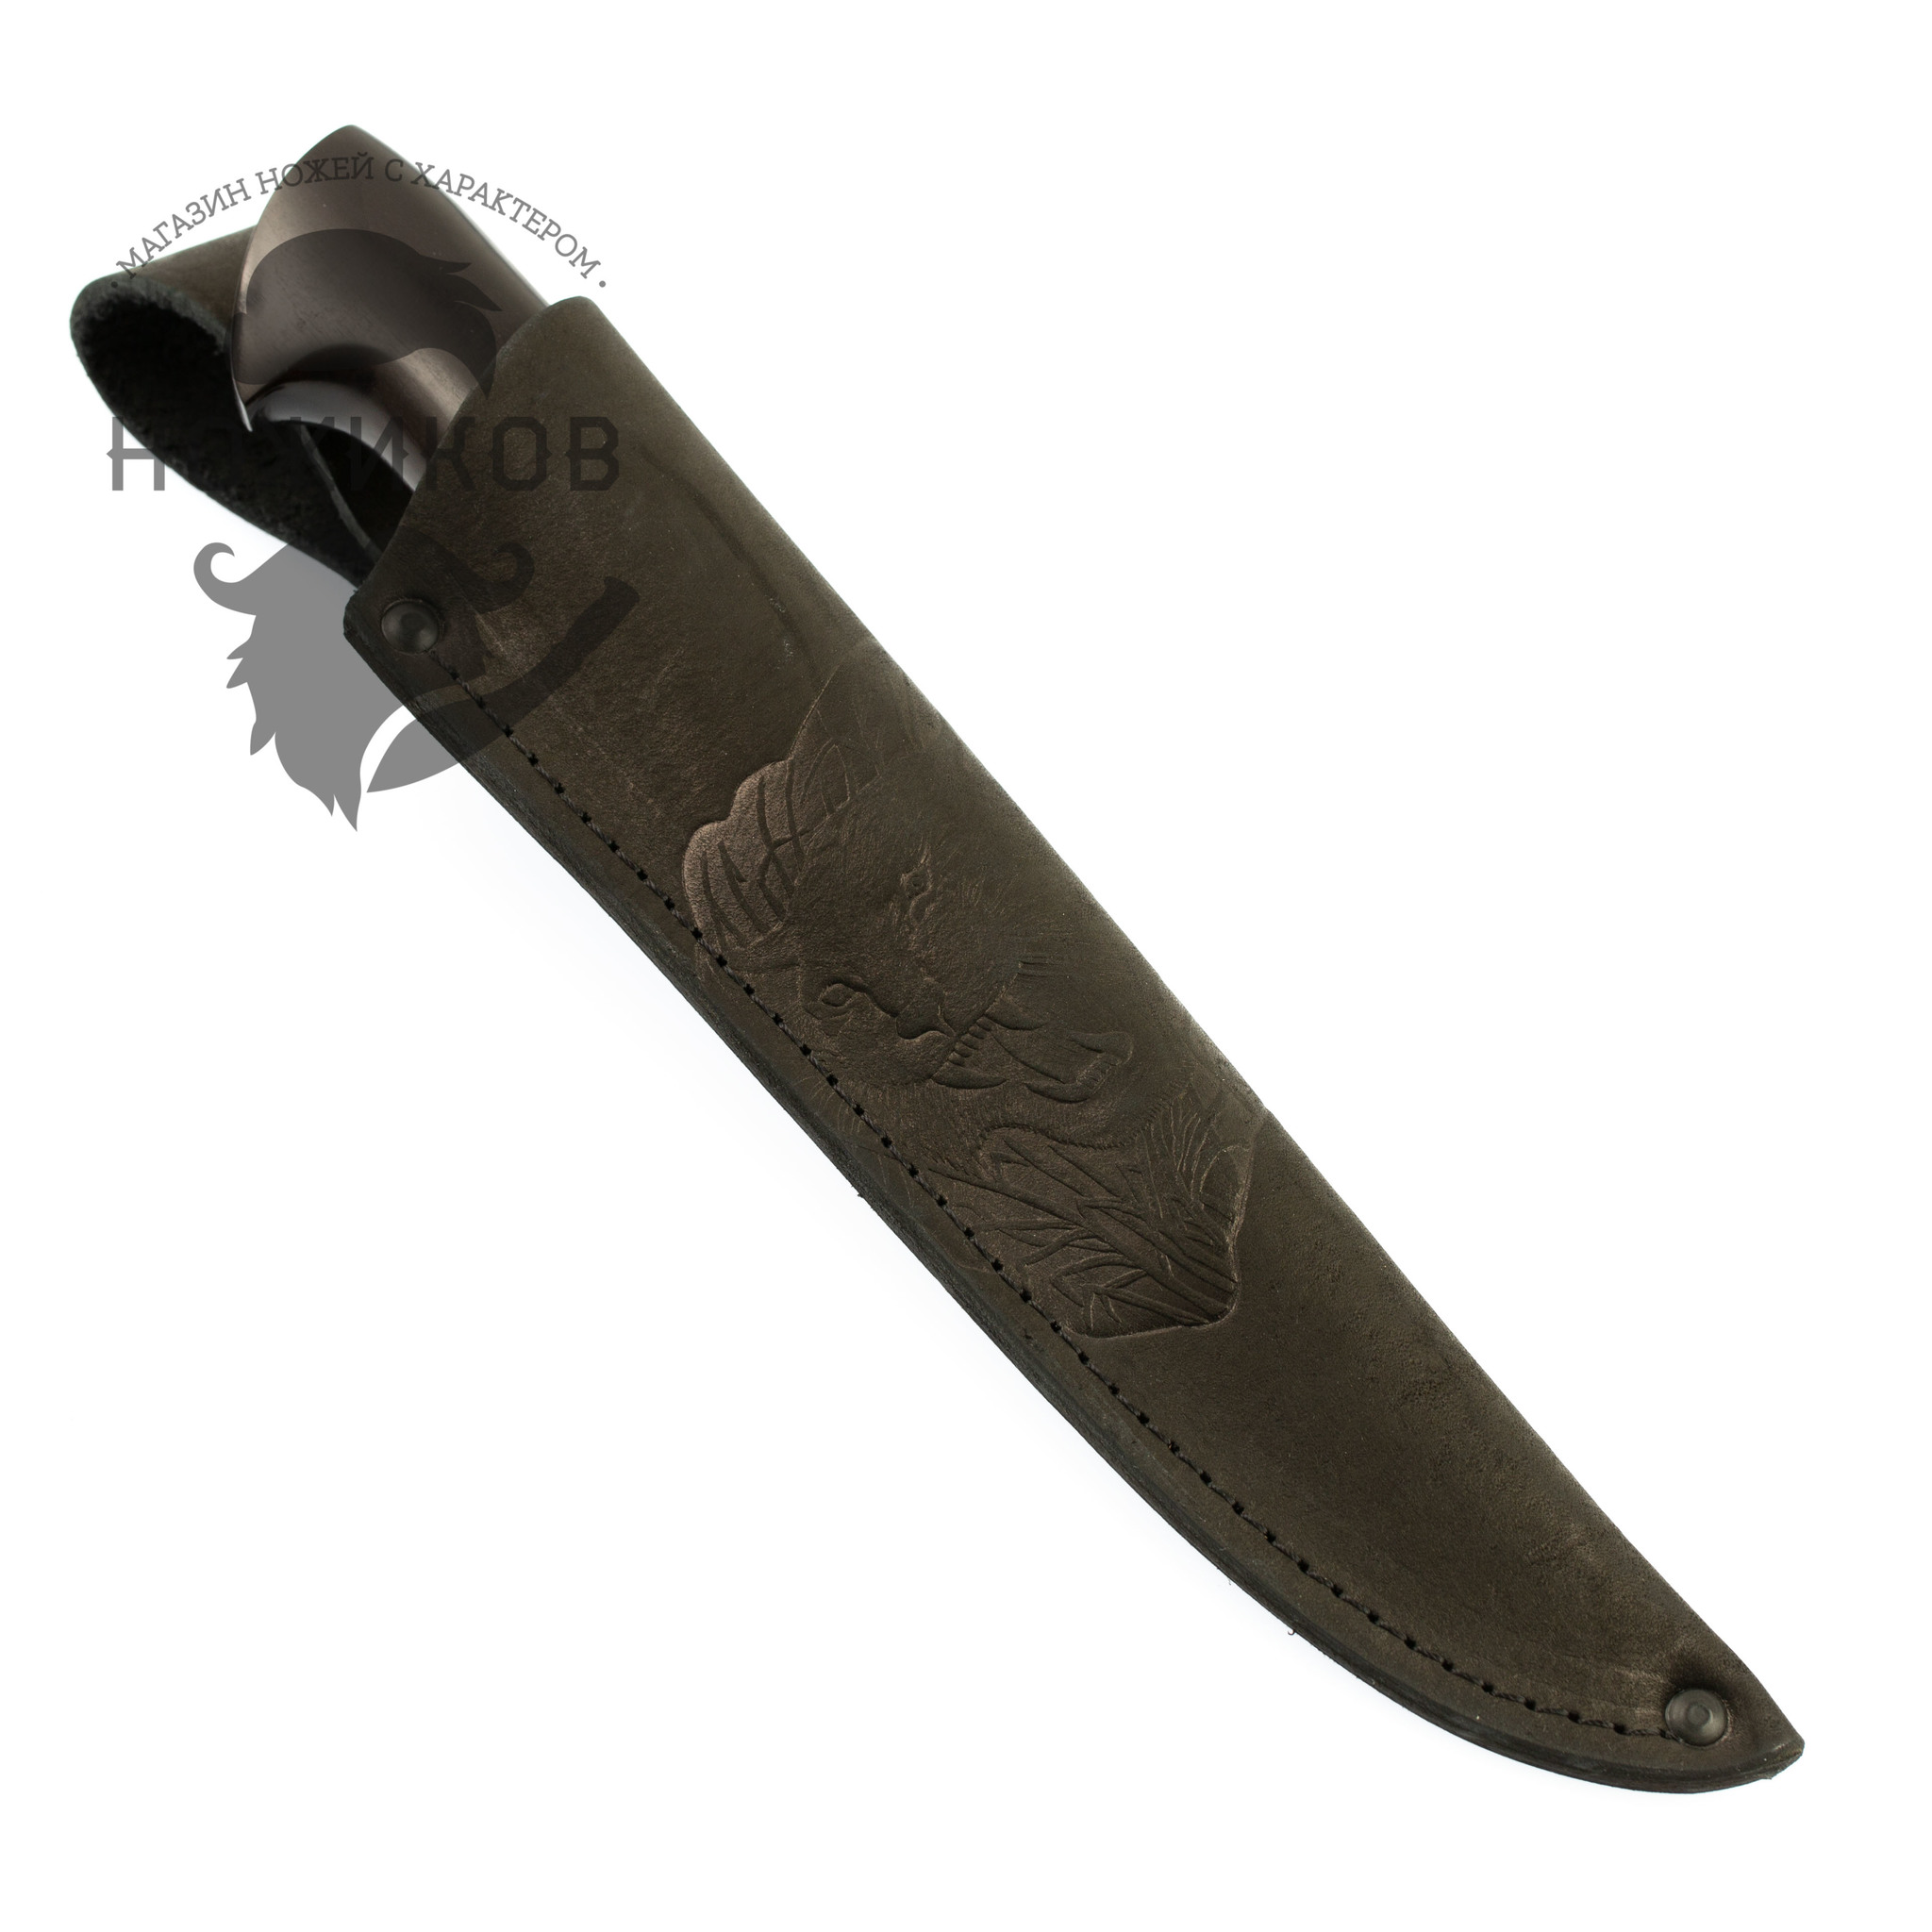 Нож Леший-2, дамасская сталь, граб от Ножиков